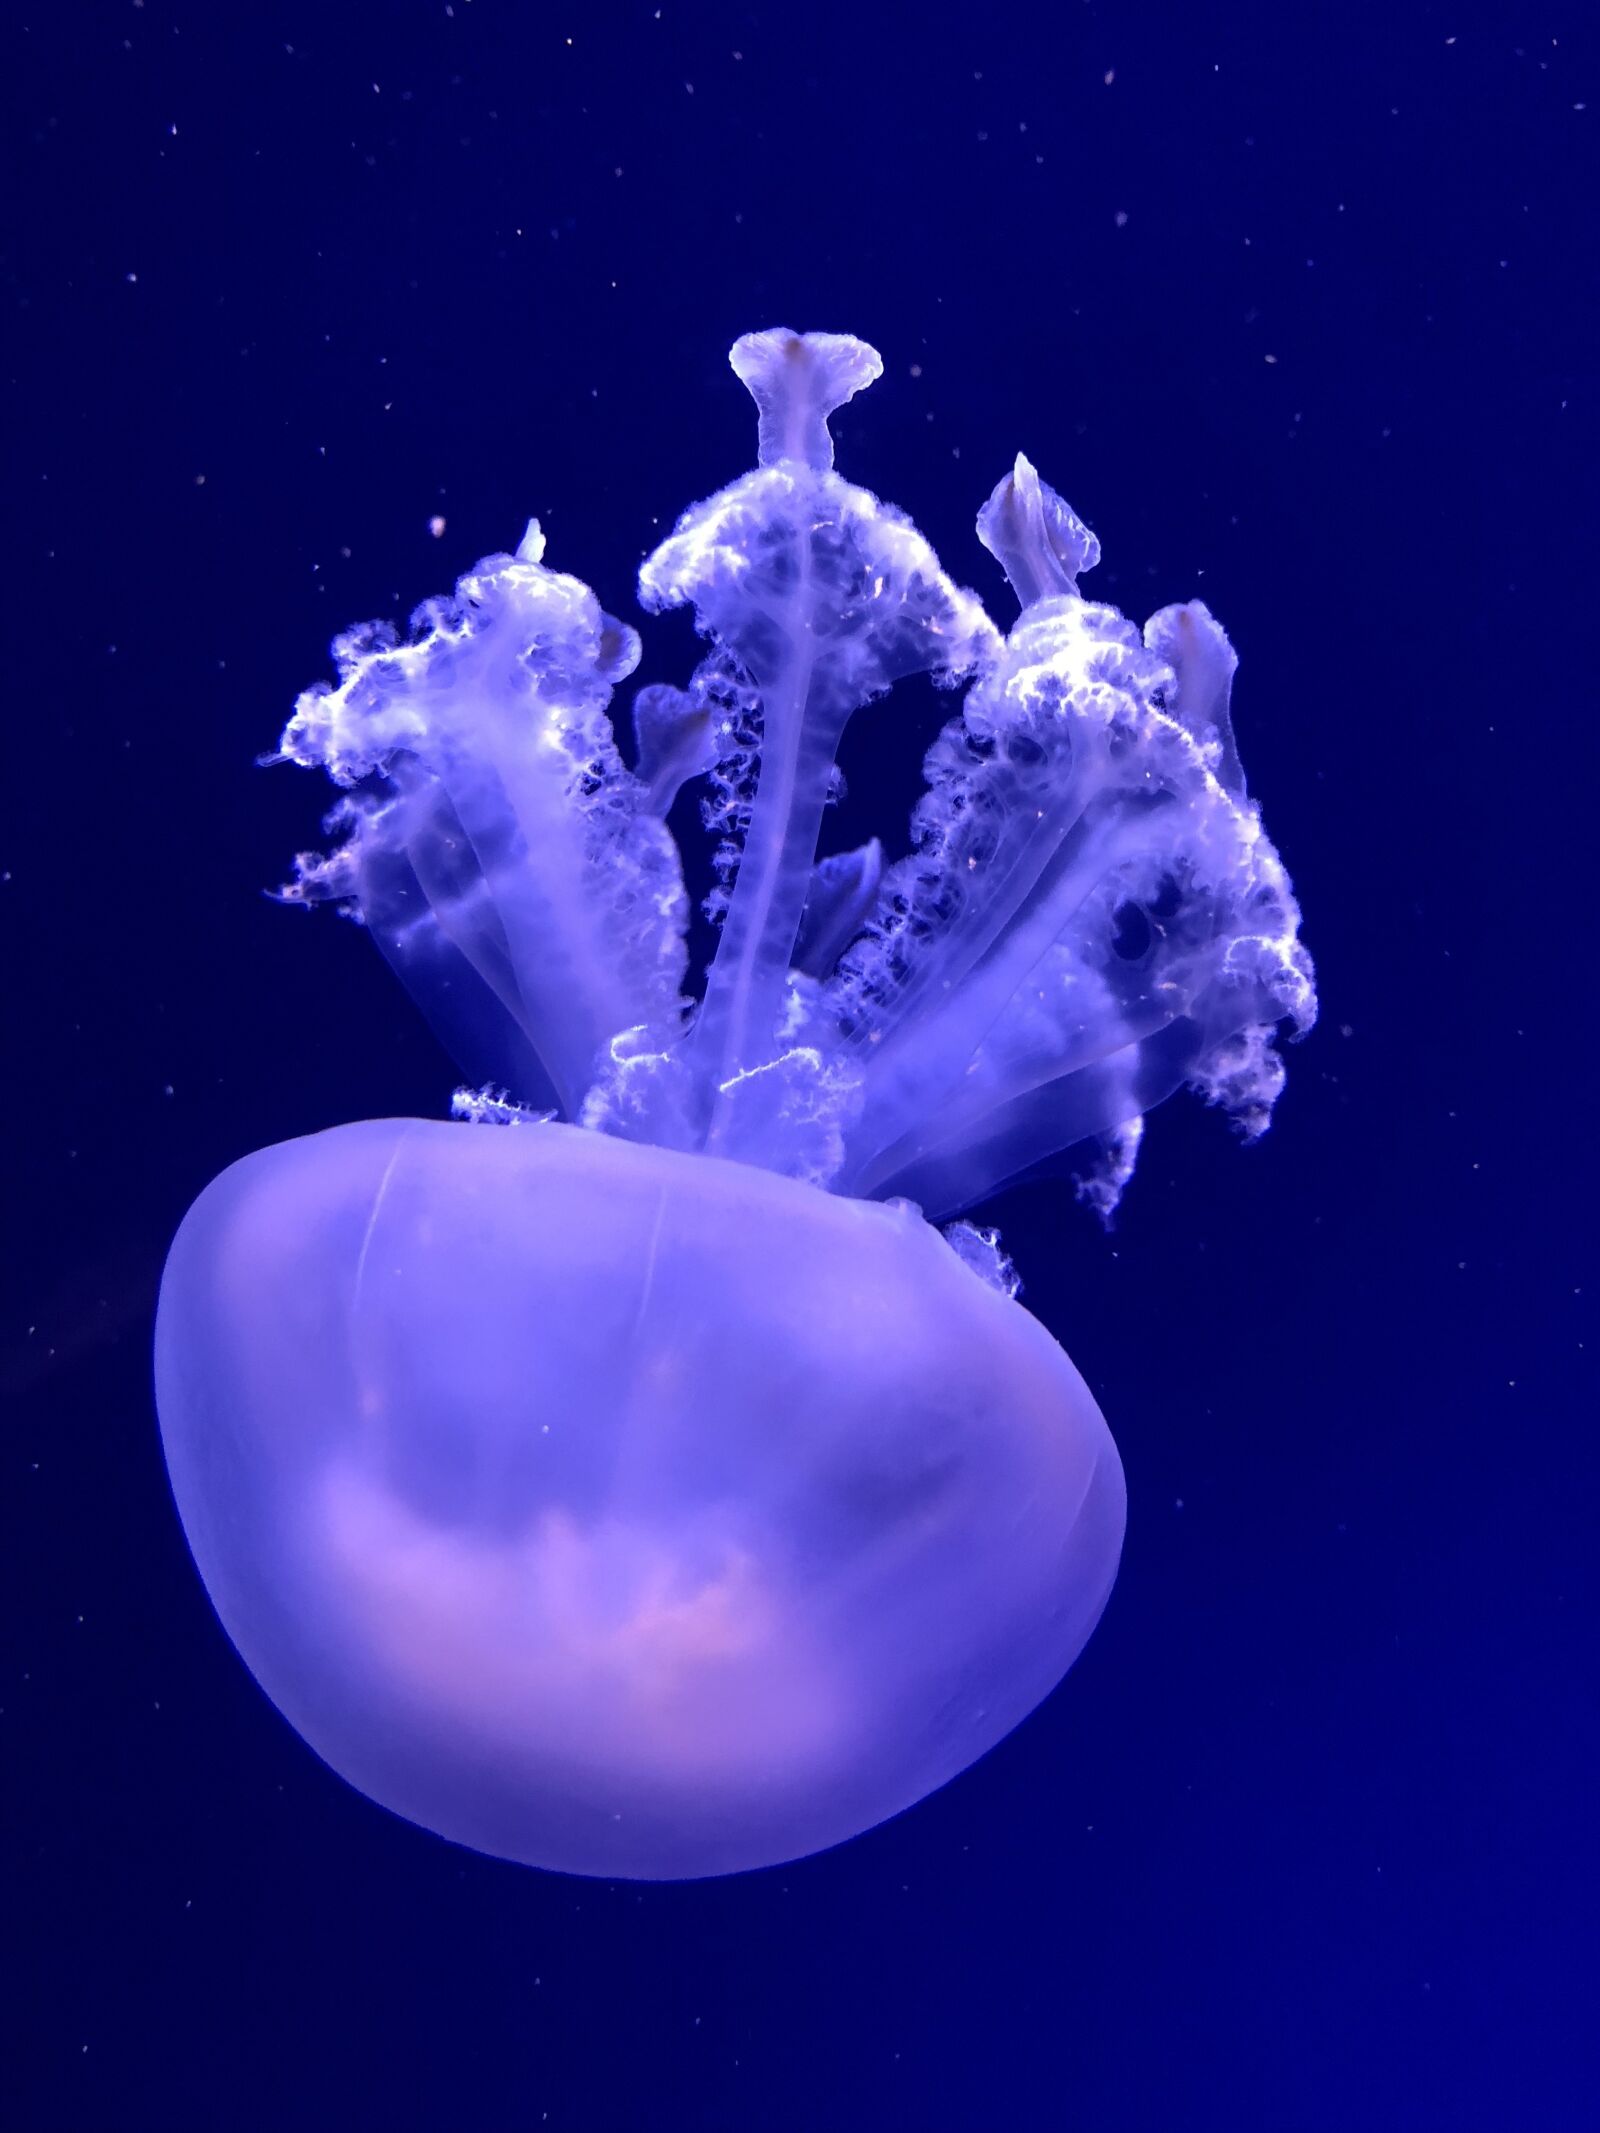 Apple iPhone 8 sample photo. Submerged, medusa, nature photography